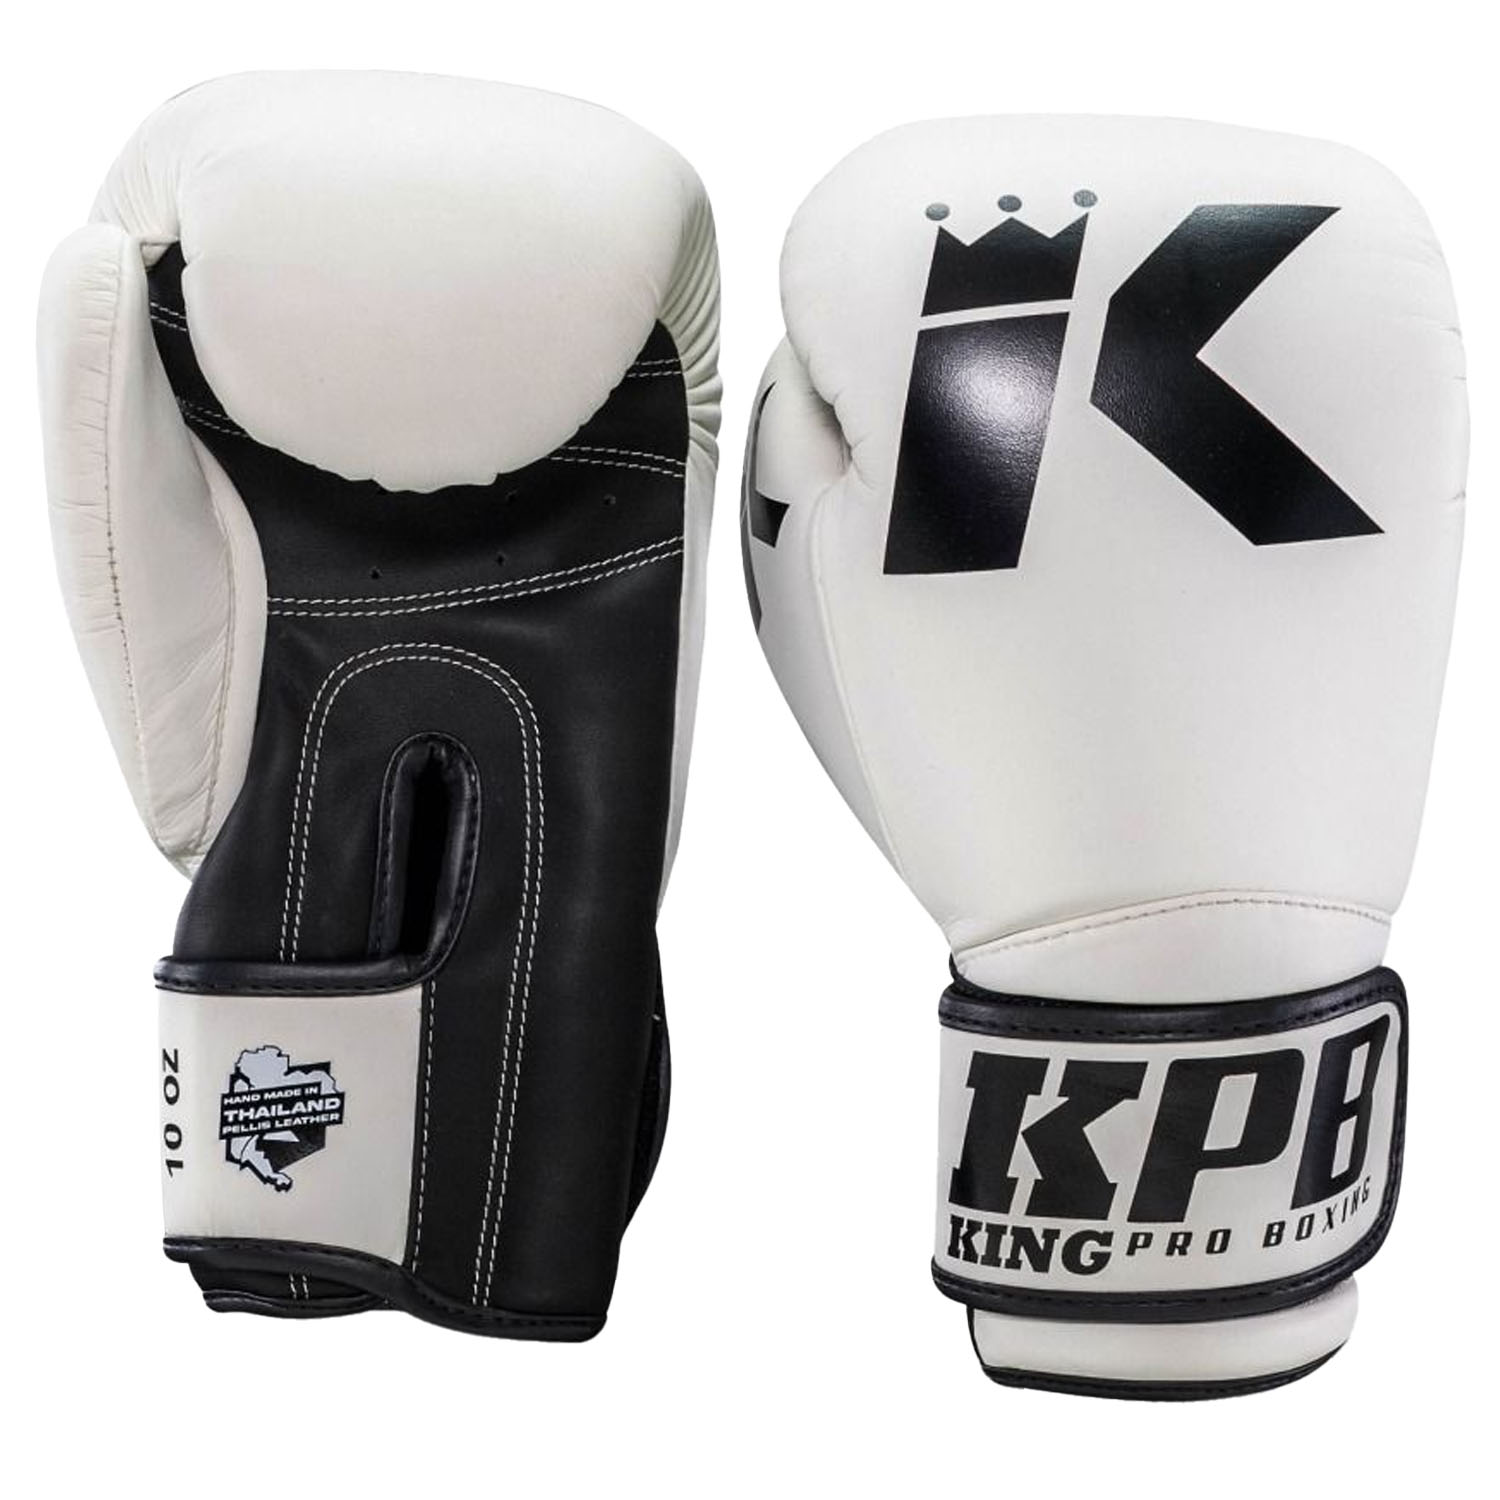 KING PRO BOXING Boxing Gloves, BGK 2, white